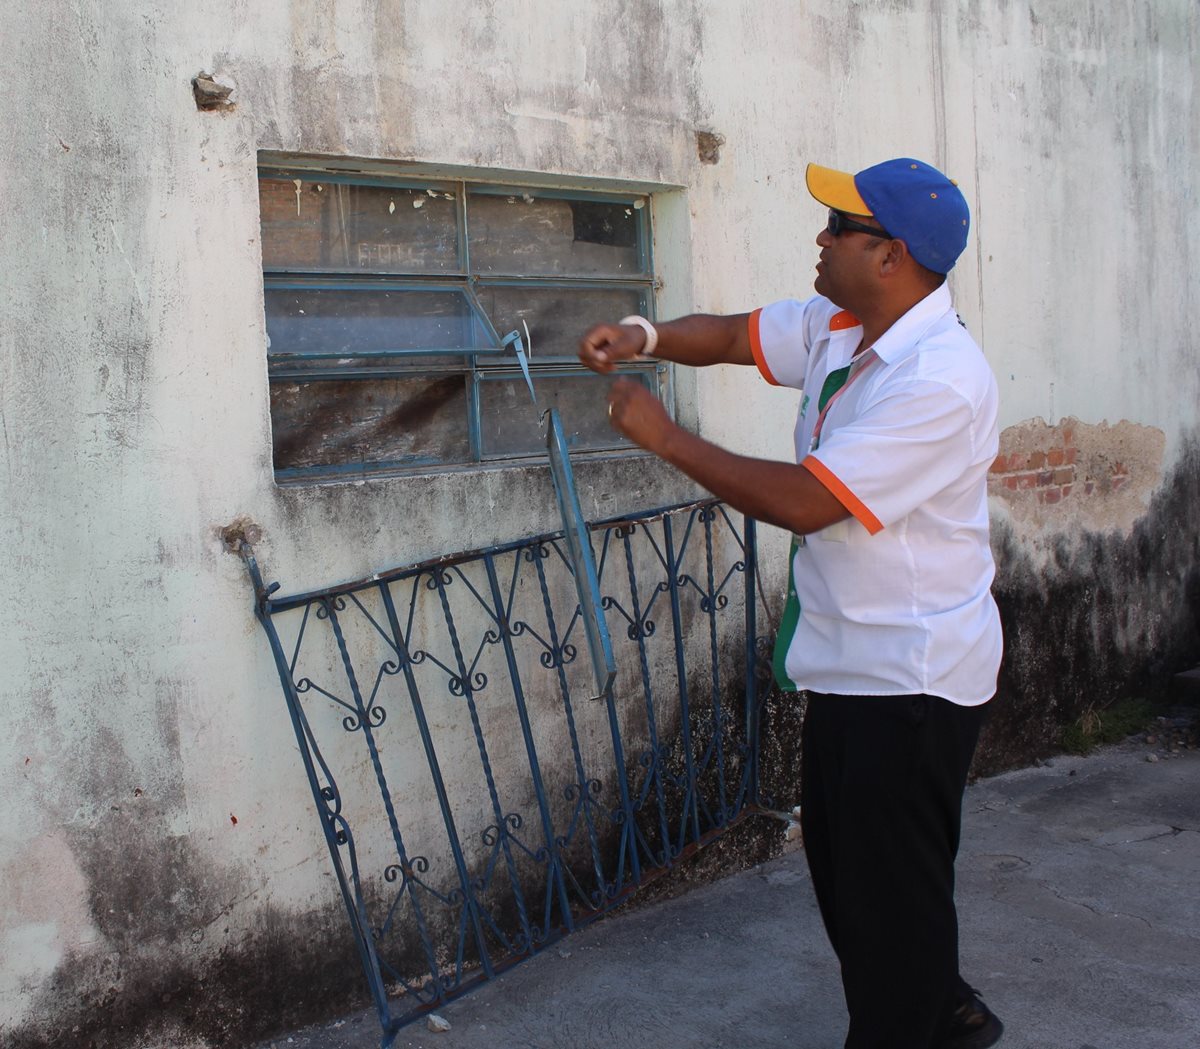 Maestro señala la ventana donde los delincuentes ingresaron a la dirección, hurtaron instrumentos y otros objetos. (Foto Prensa Libre: Óscar González)